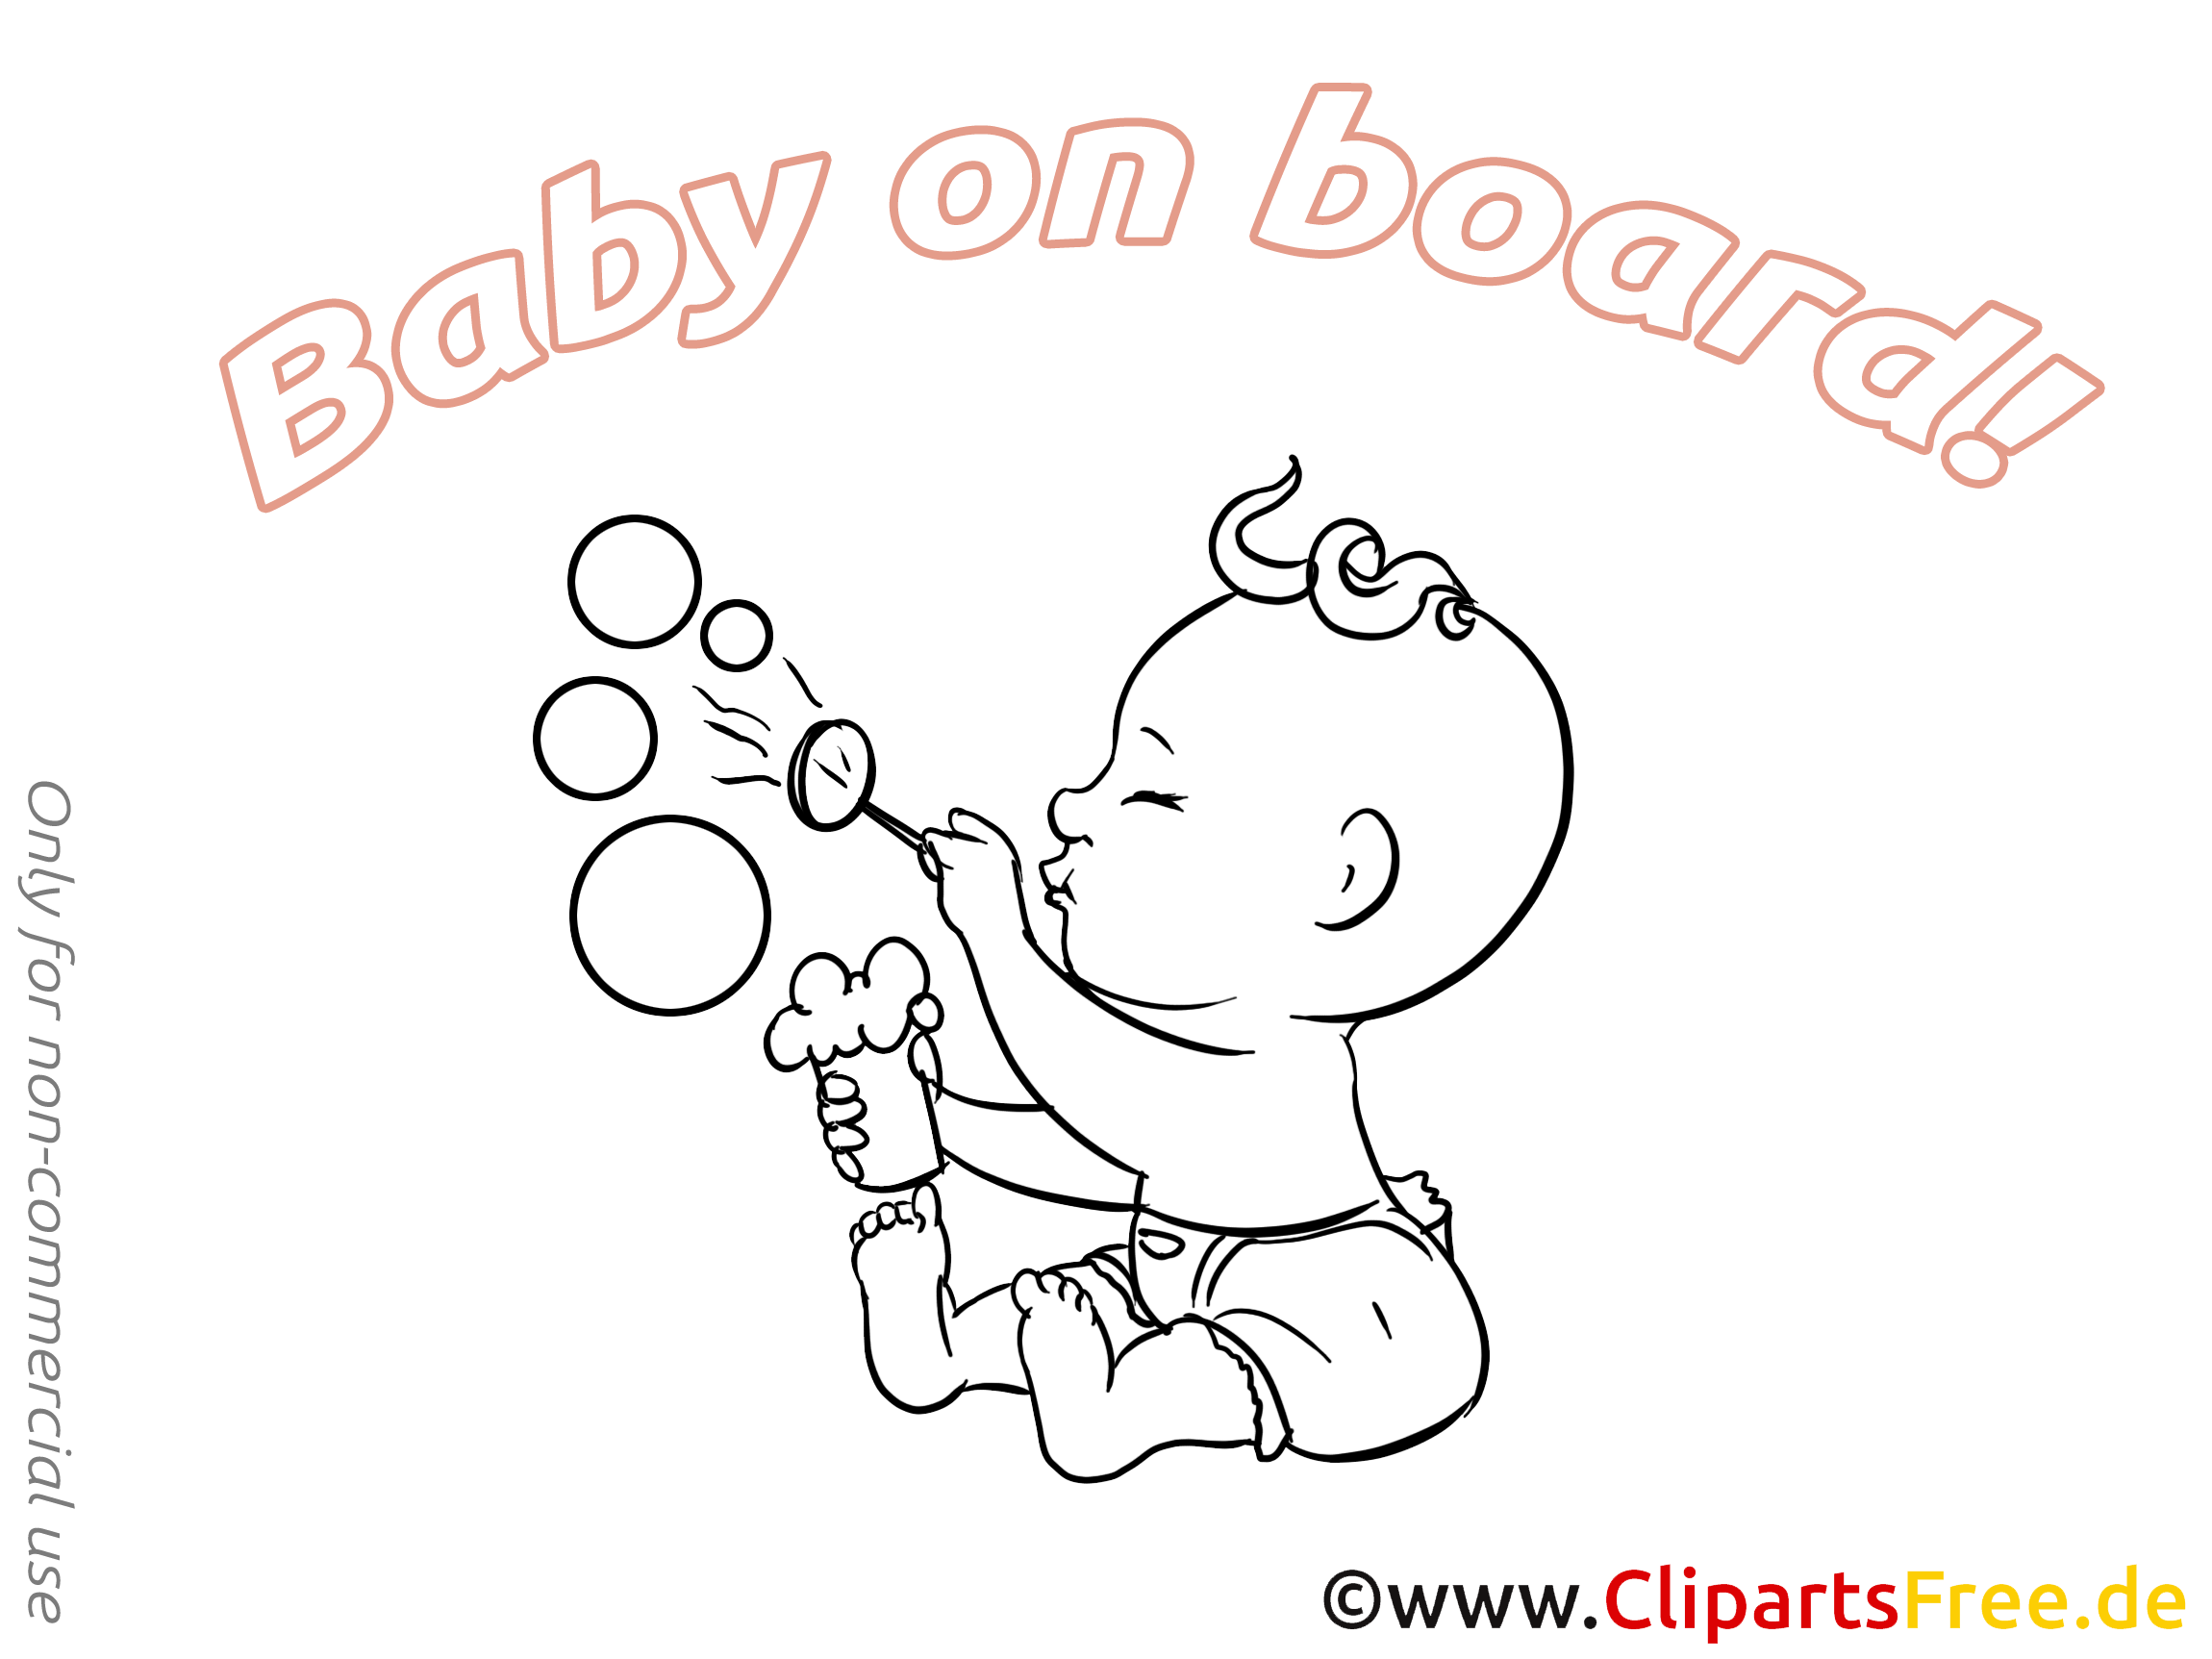 Bulles de savon illustration à imprimer – Bébé à bord images